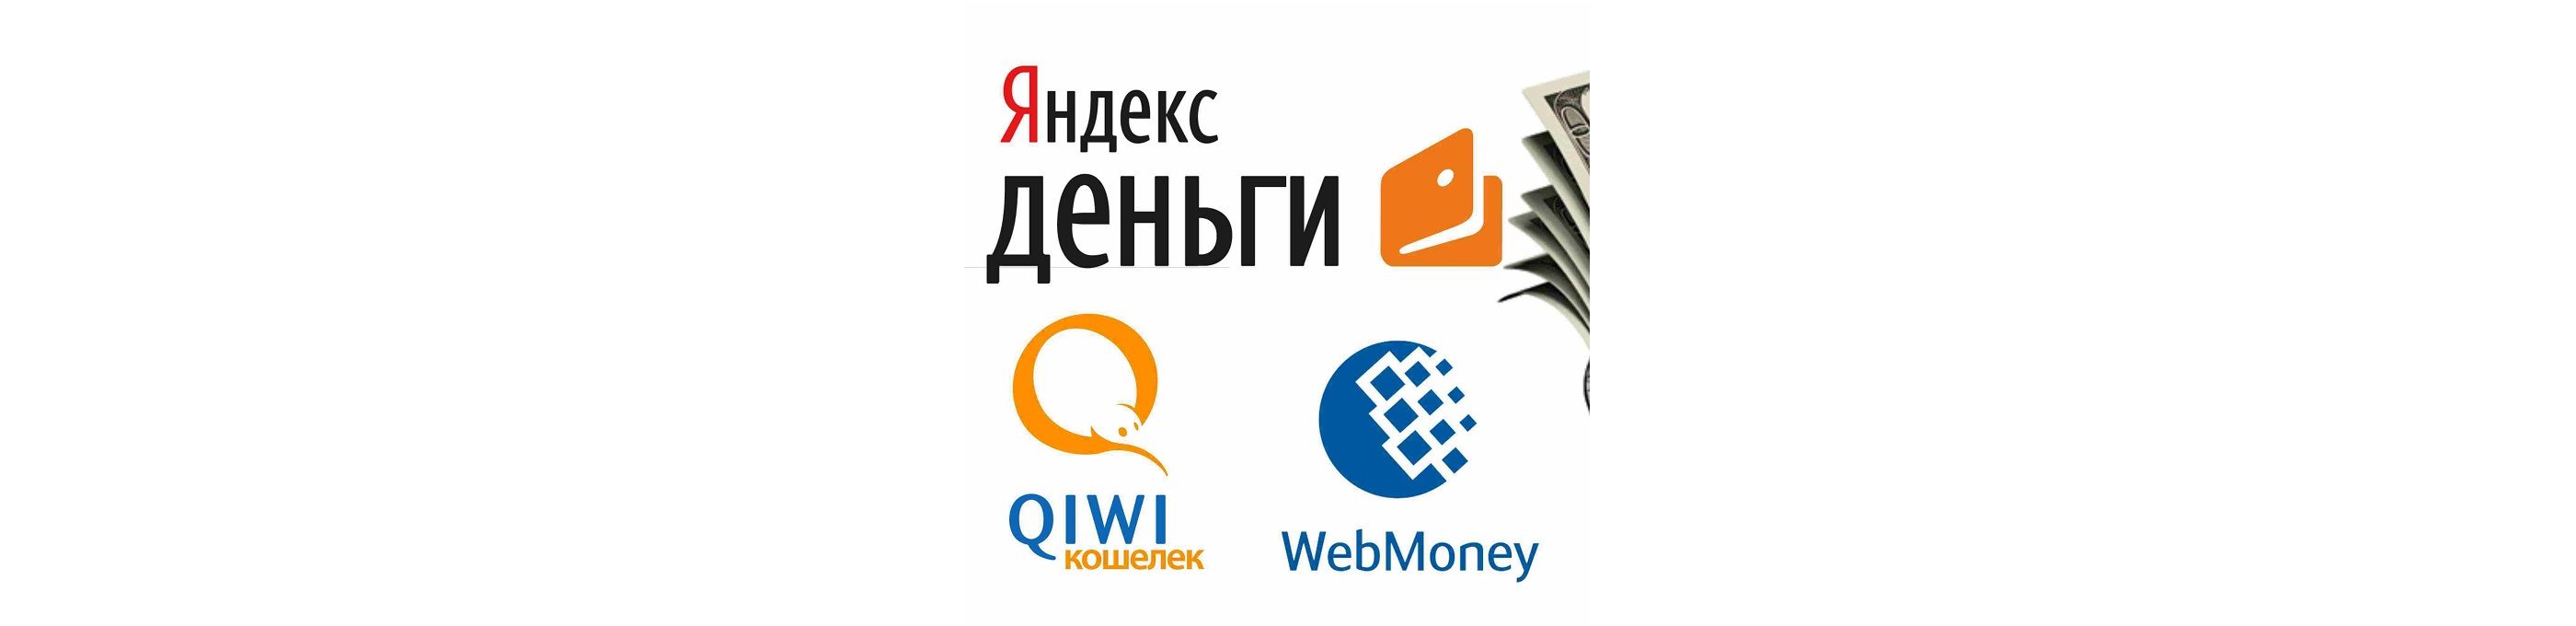 Благодаря подключению к системе быстрых платежей электронных сервисов WebMoney и Яндекс.Деньги, пользователи смогут существенно сэкономить на переводах.